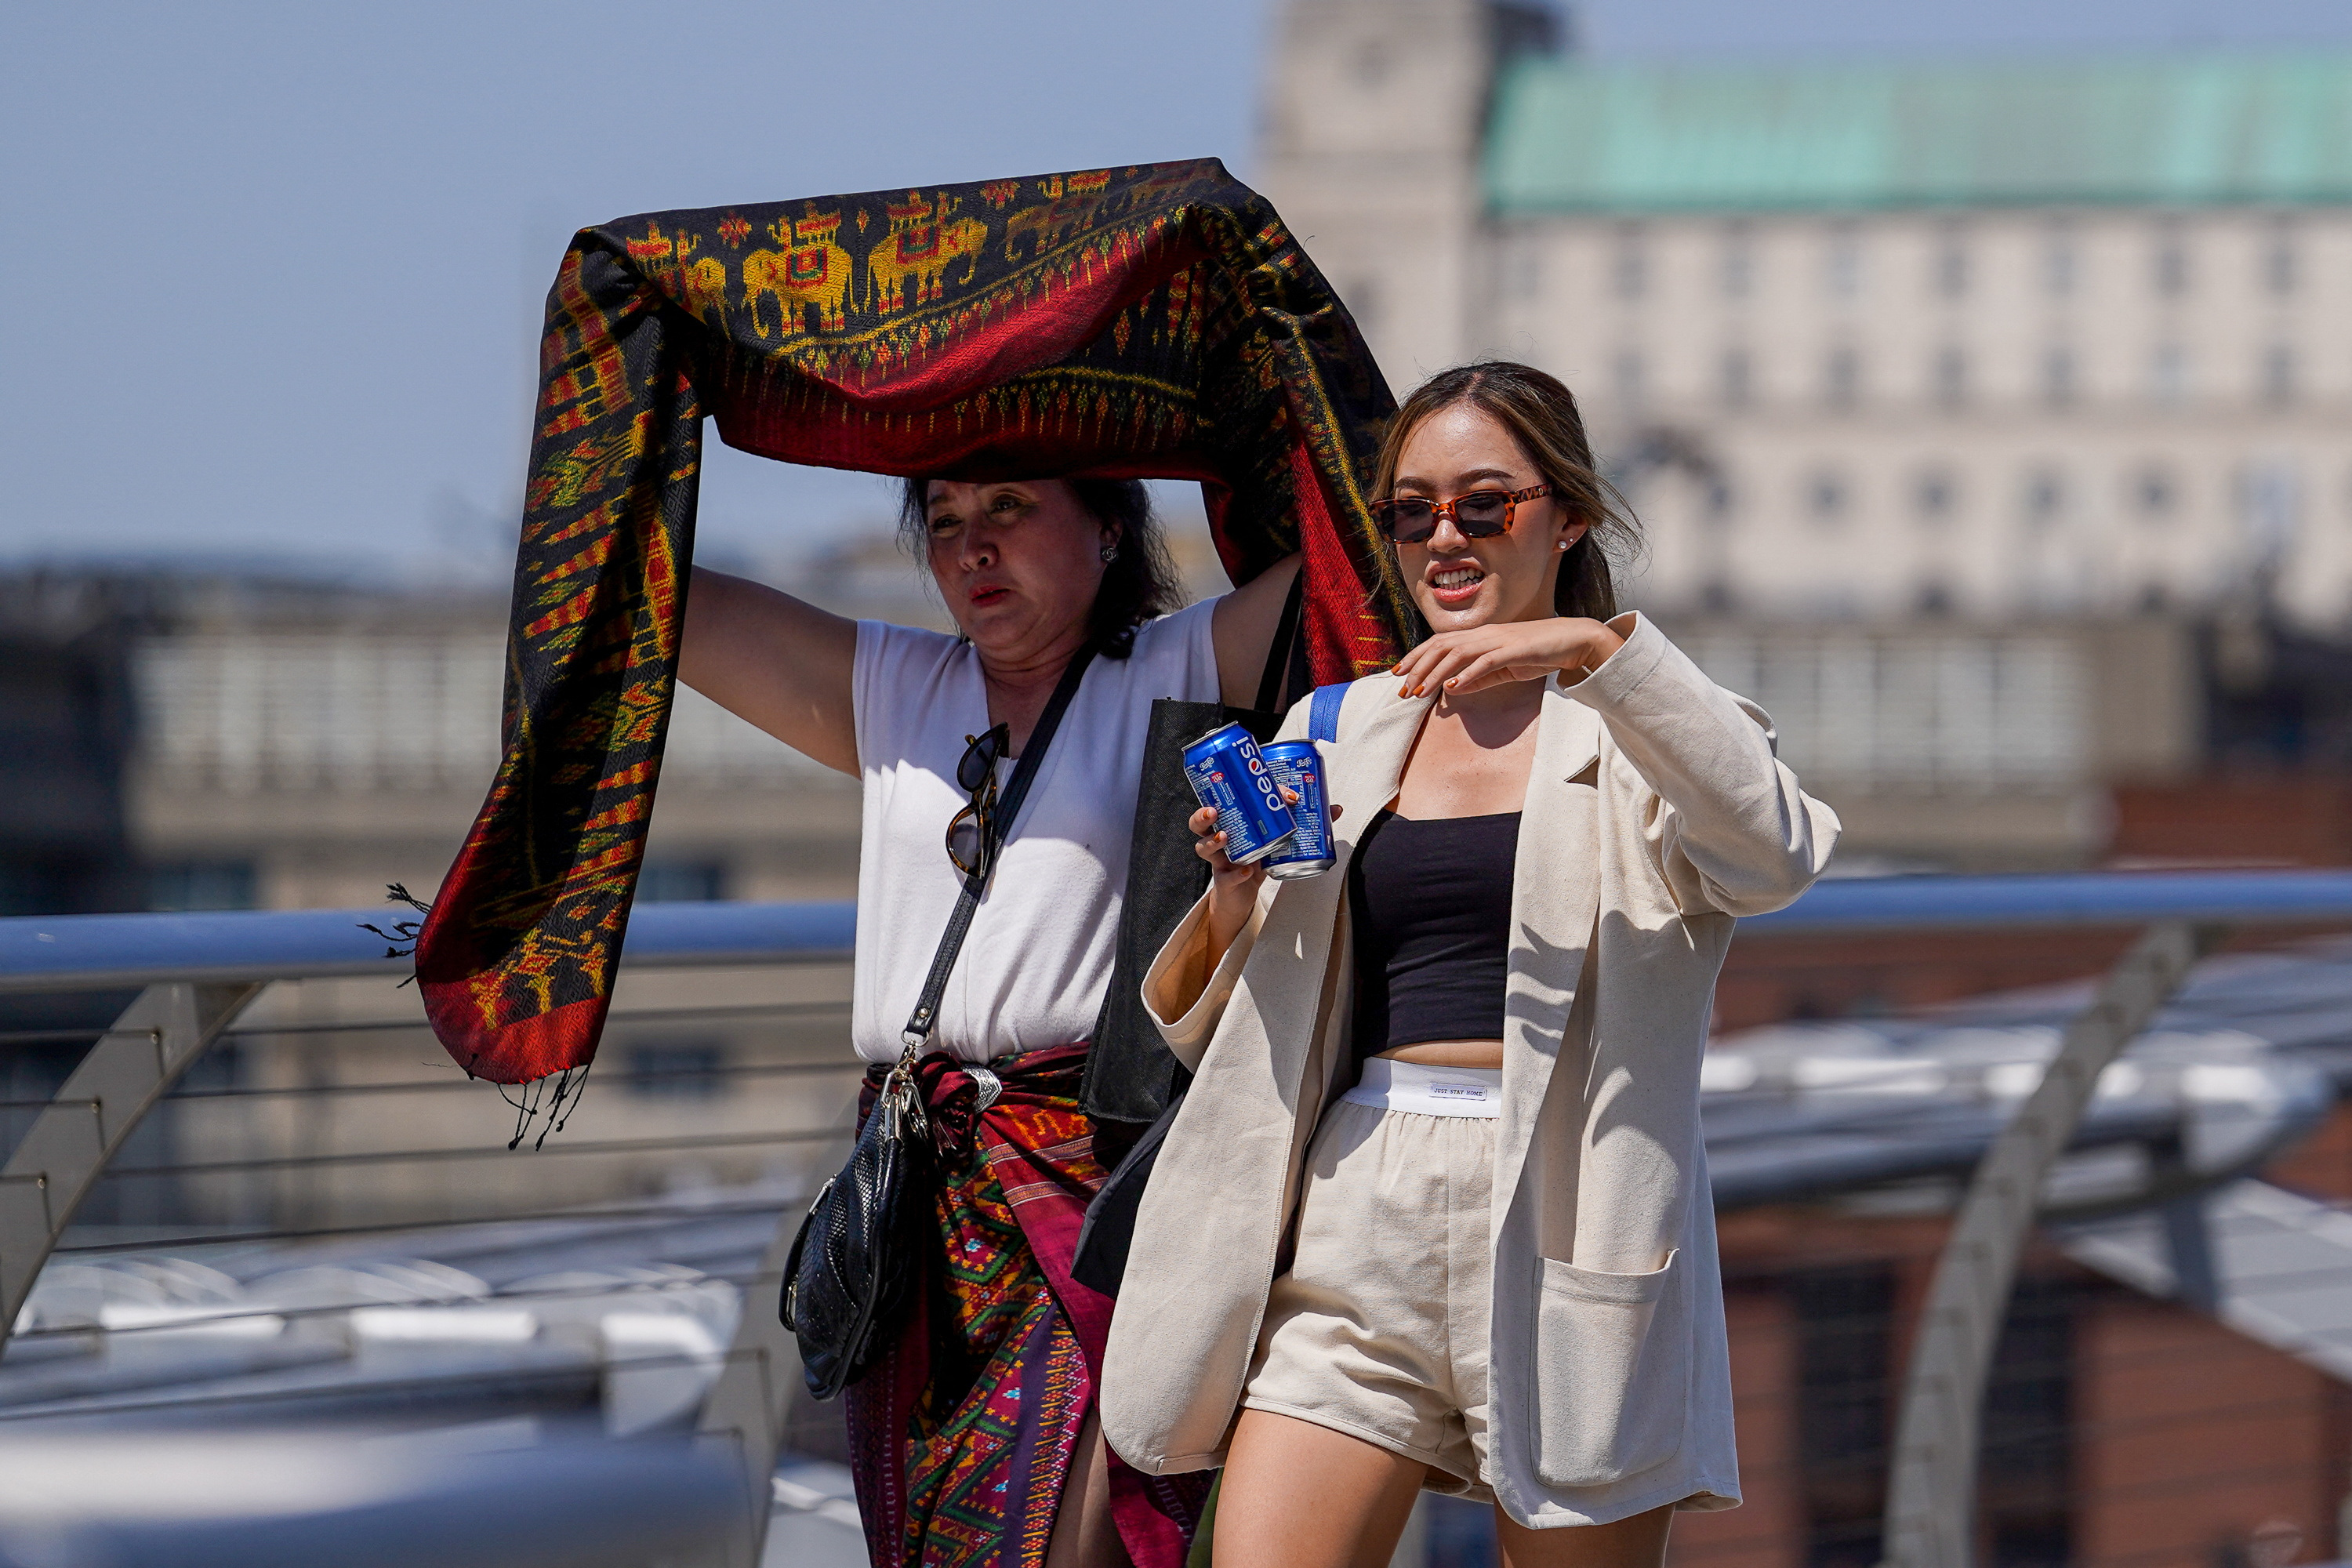 La gente se cubre del sol en el Puente del Milenio durante una ola de calor, en Londres (REUTERS/Maja Smialkowska)